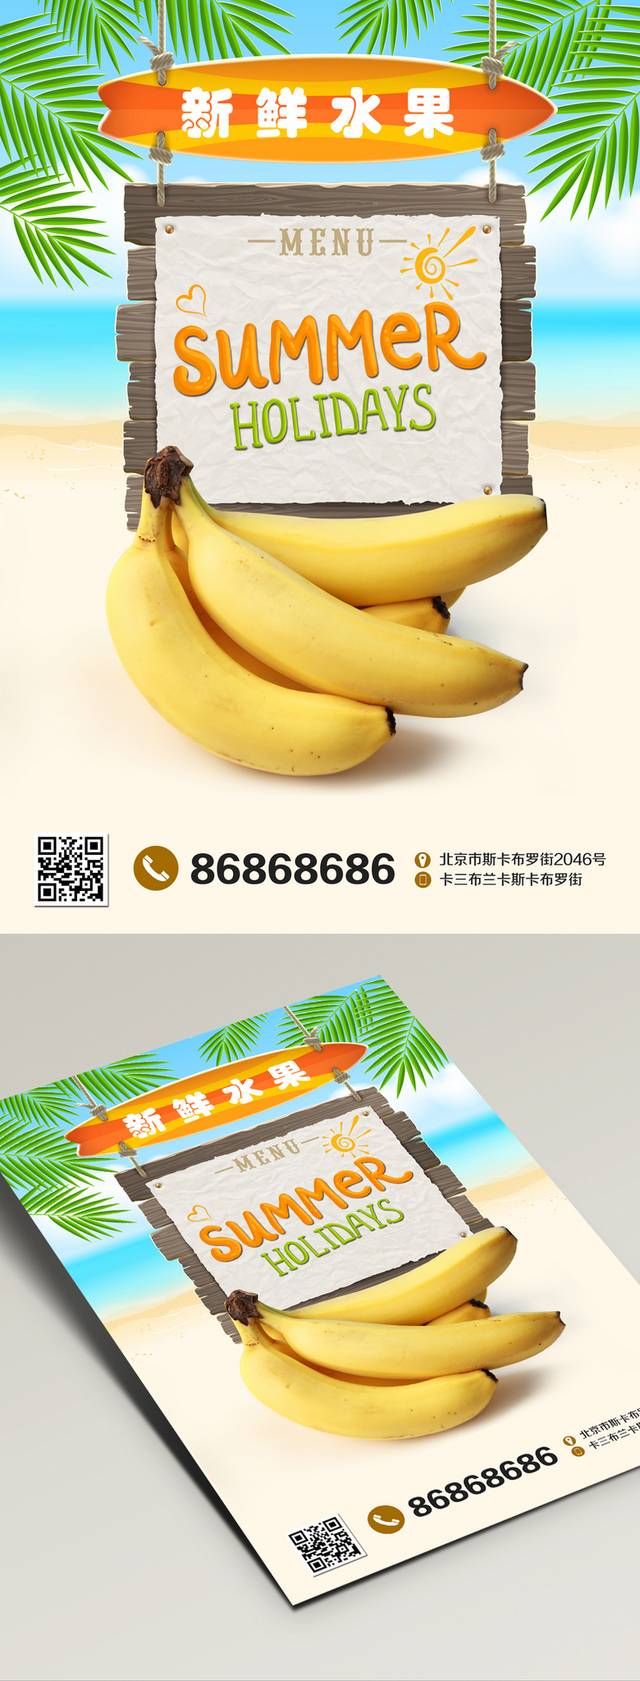 高清香蕉宣传海报设计